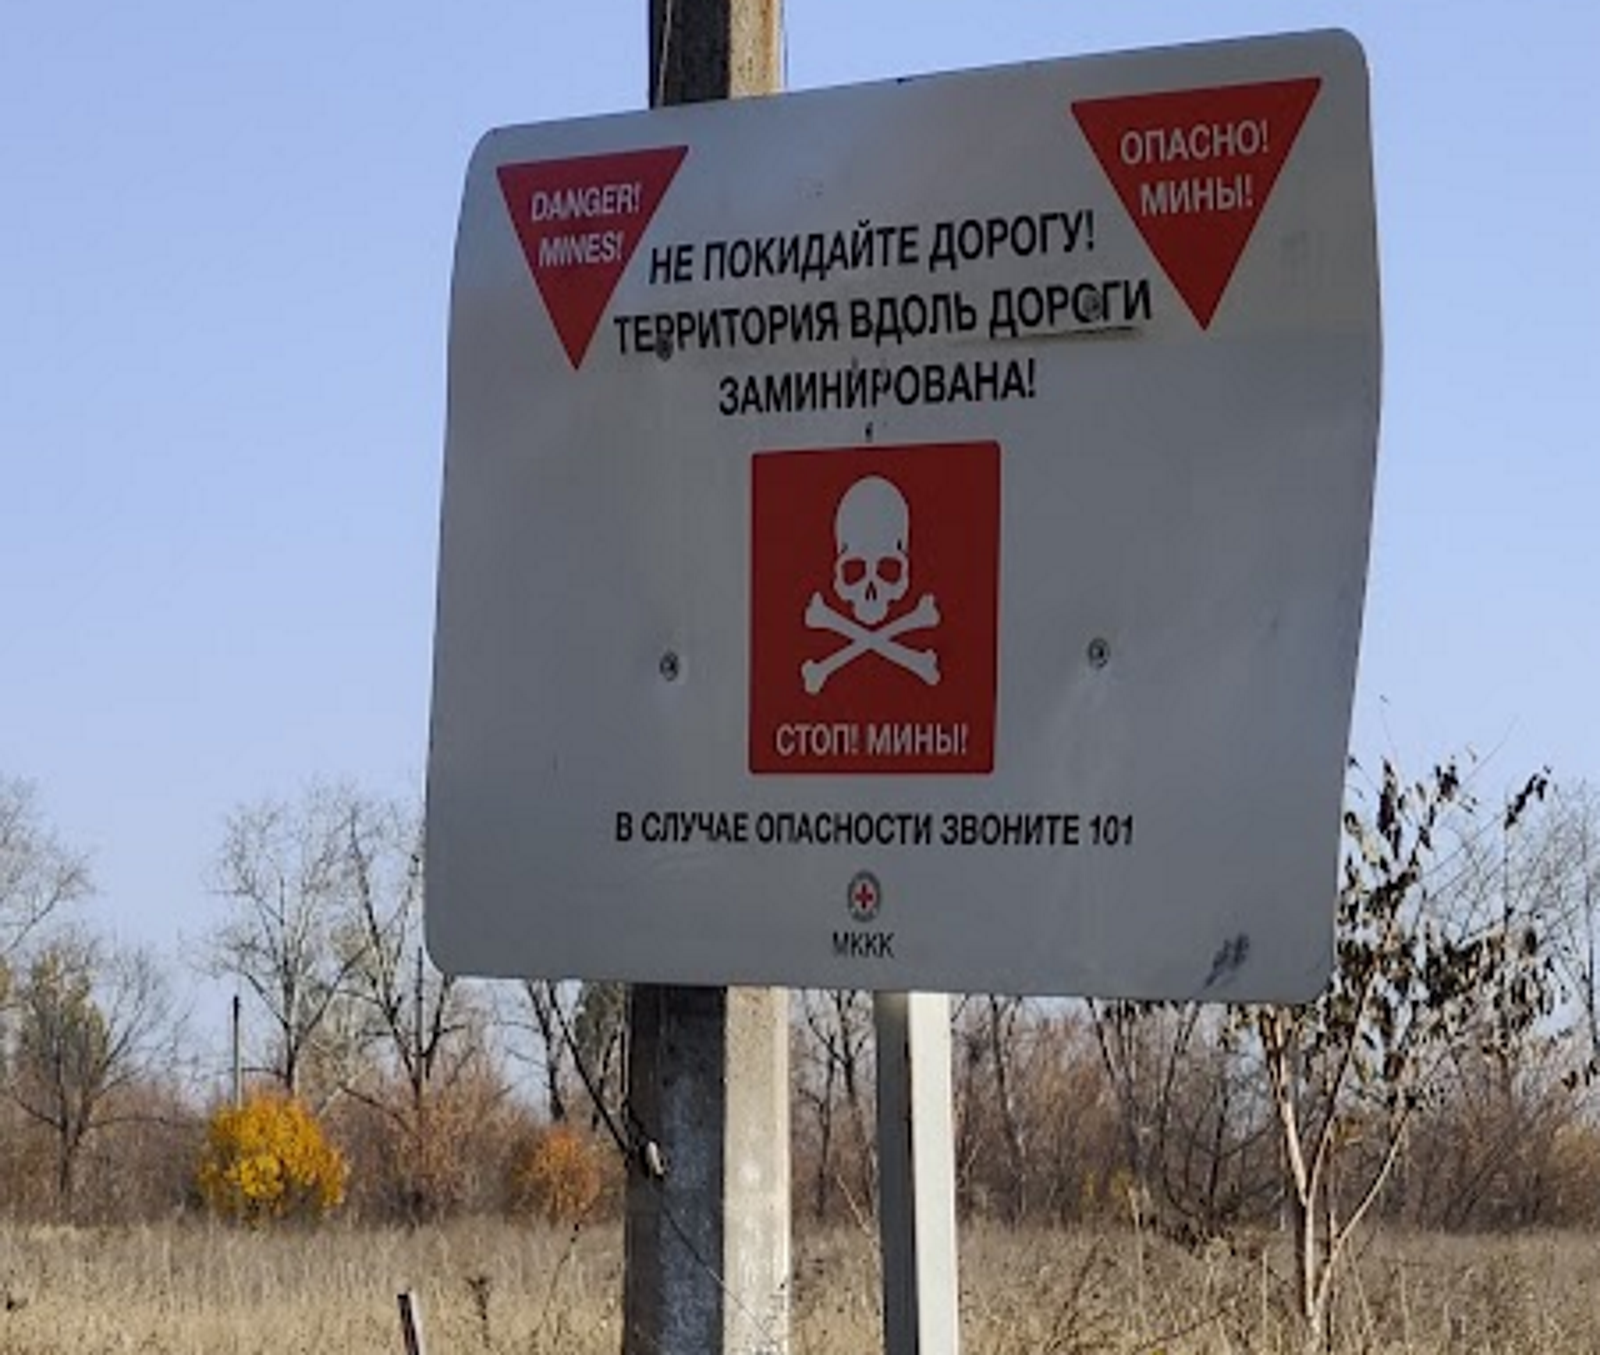 Agiles, les robots Spot peuvent se faufiler là où les autres robots de déminage ne peuvent pas aller. Champ de mines à Avdiika dans le Donbass en 2019. © Sylvain Biget